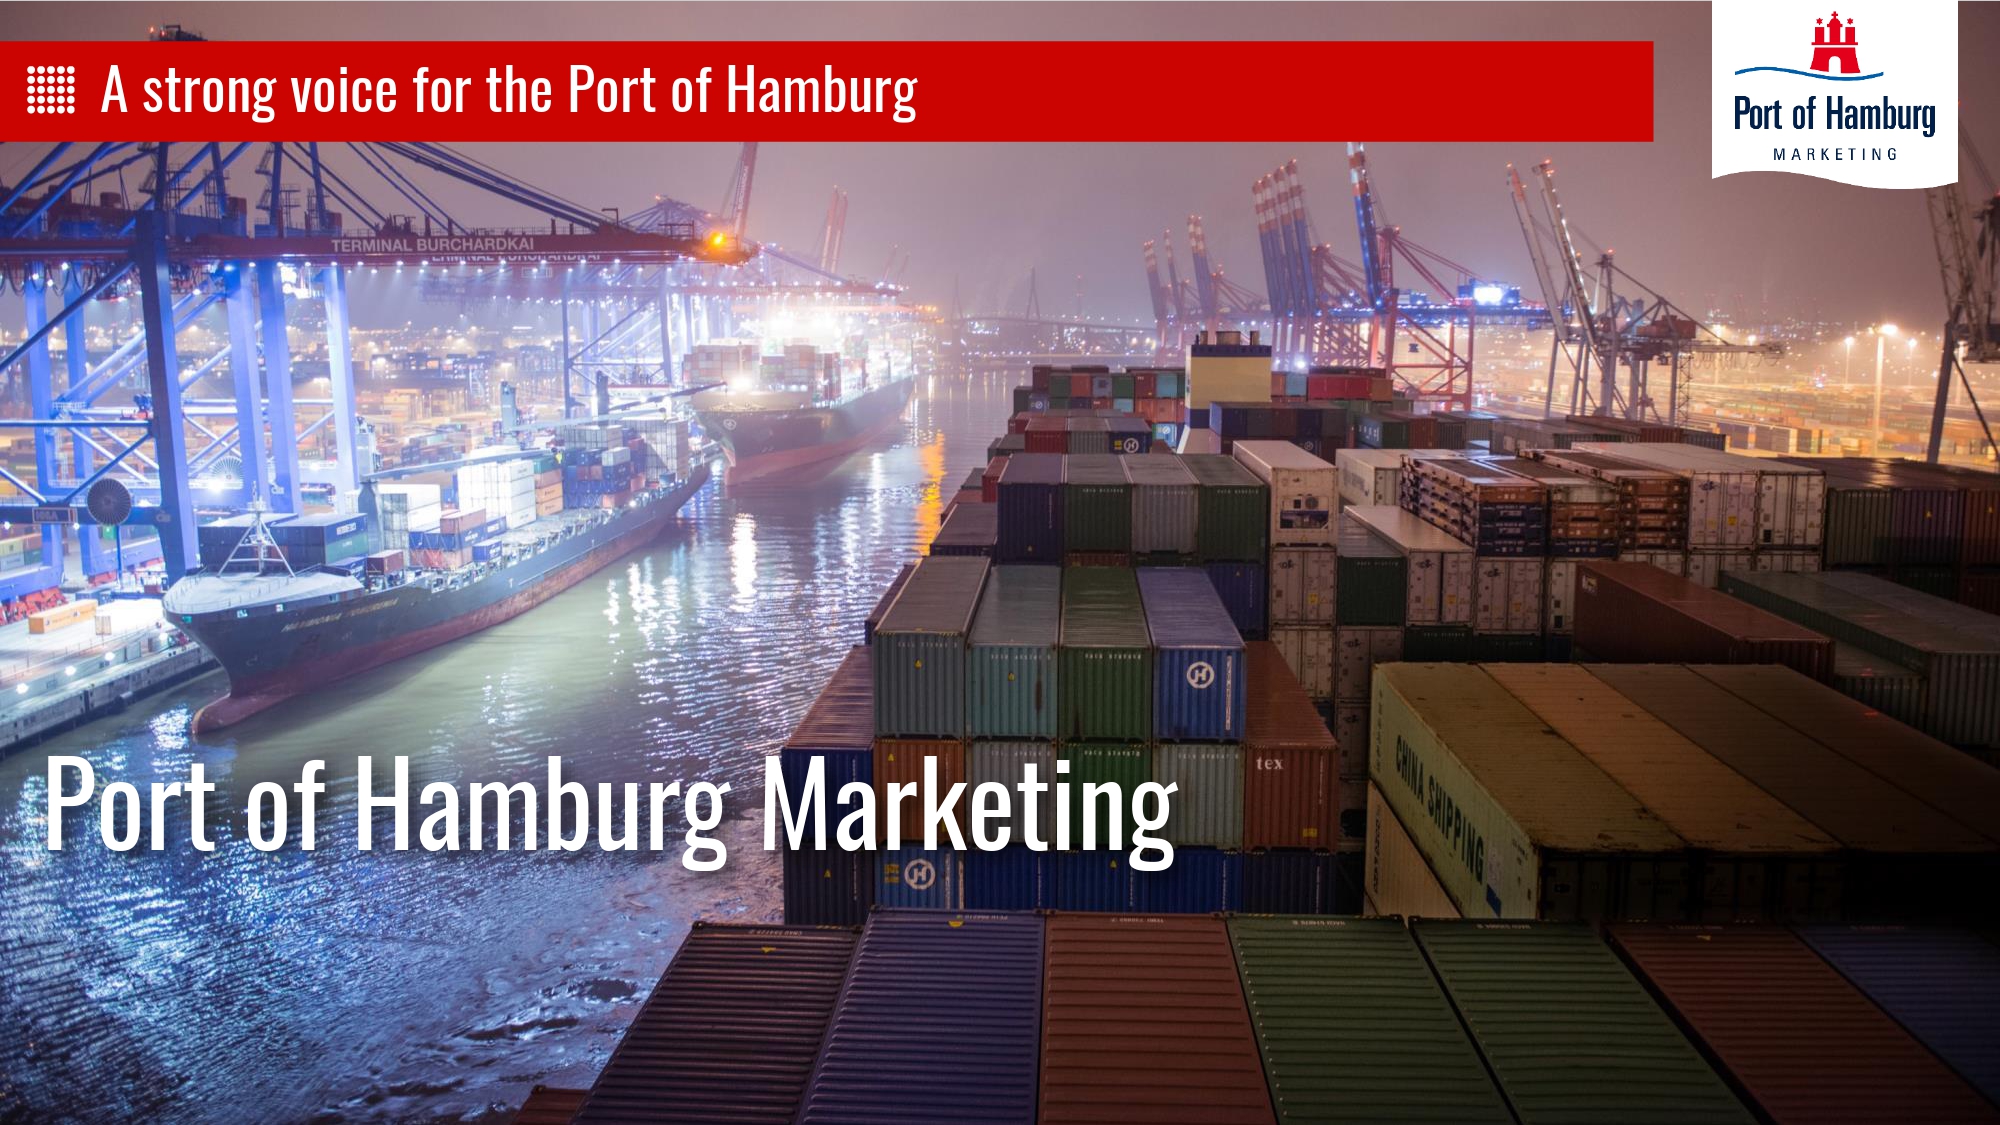 Волжское пароходство стало участником международной ассоциации Port of Hamburg Marketing